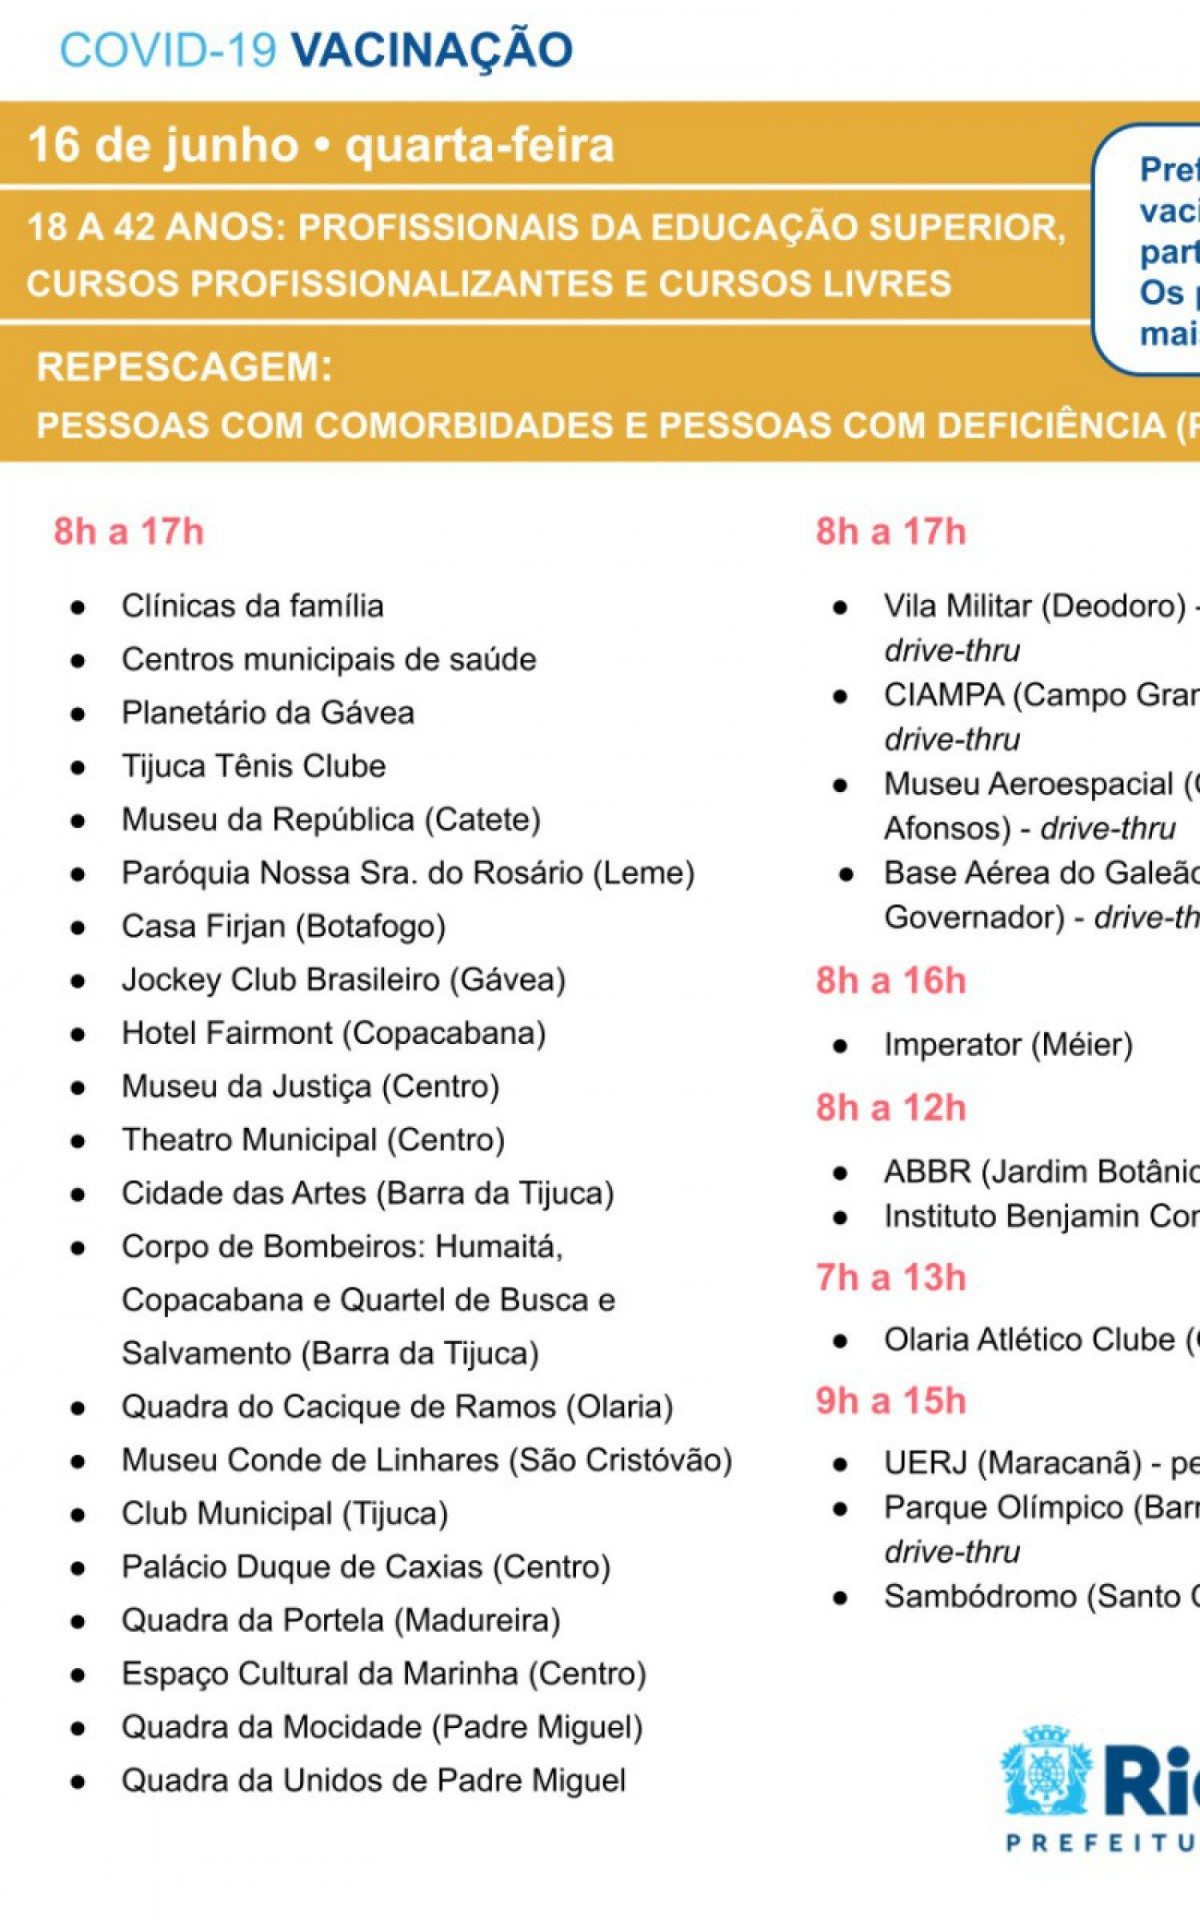 Calendário de vacinação contra a covid-19 - Foto: Reprodução / Prefeitura do Rio